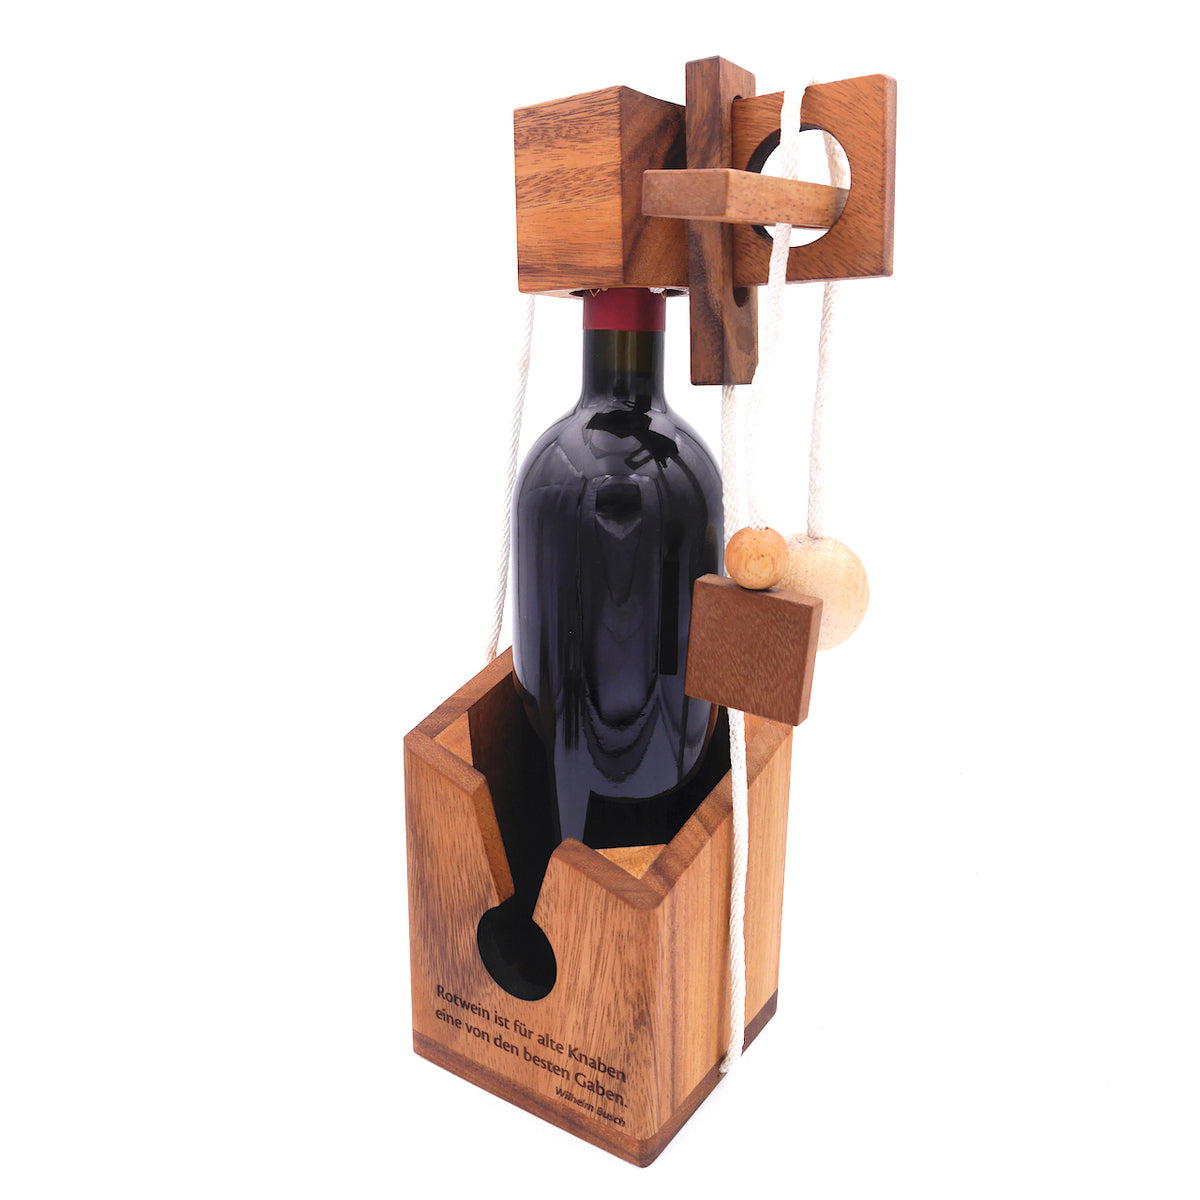 Holzverpackung für eine Flasche Wein mit einem Knobelspiel. Die Verpackung ist graviert mit einem Zitat von Wilhelm Busch.